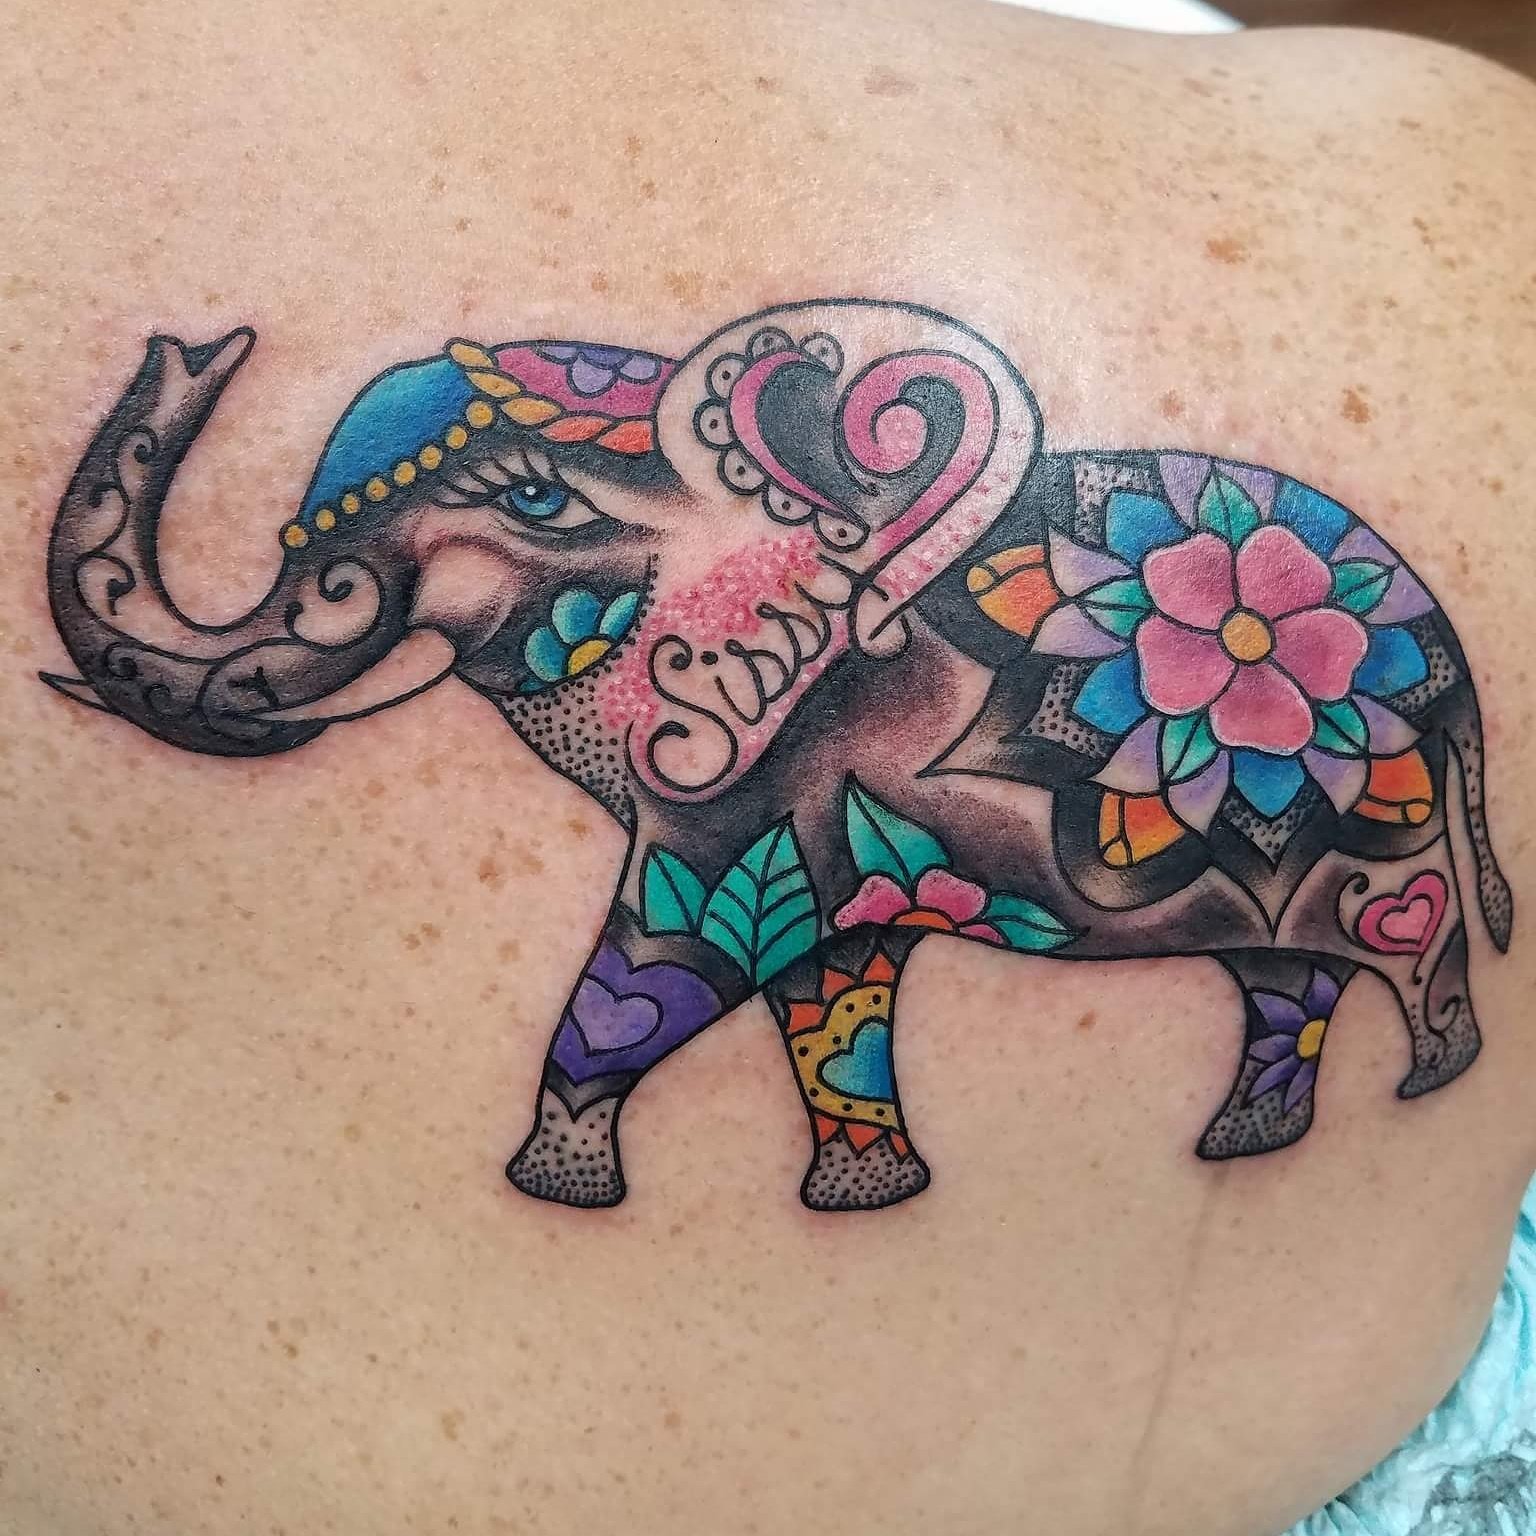 Minimalist line art elephant tattoo on the inner arm.